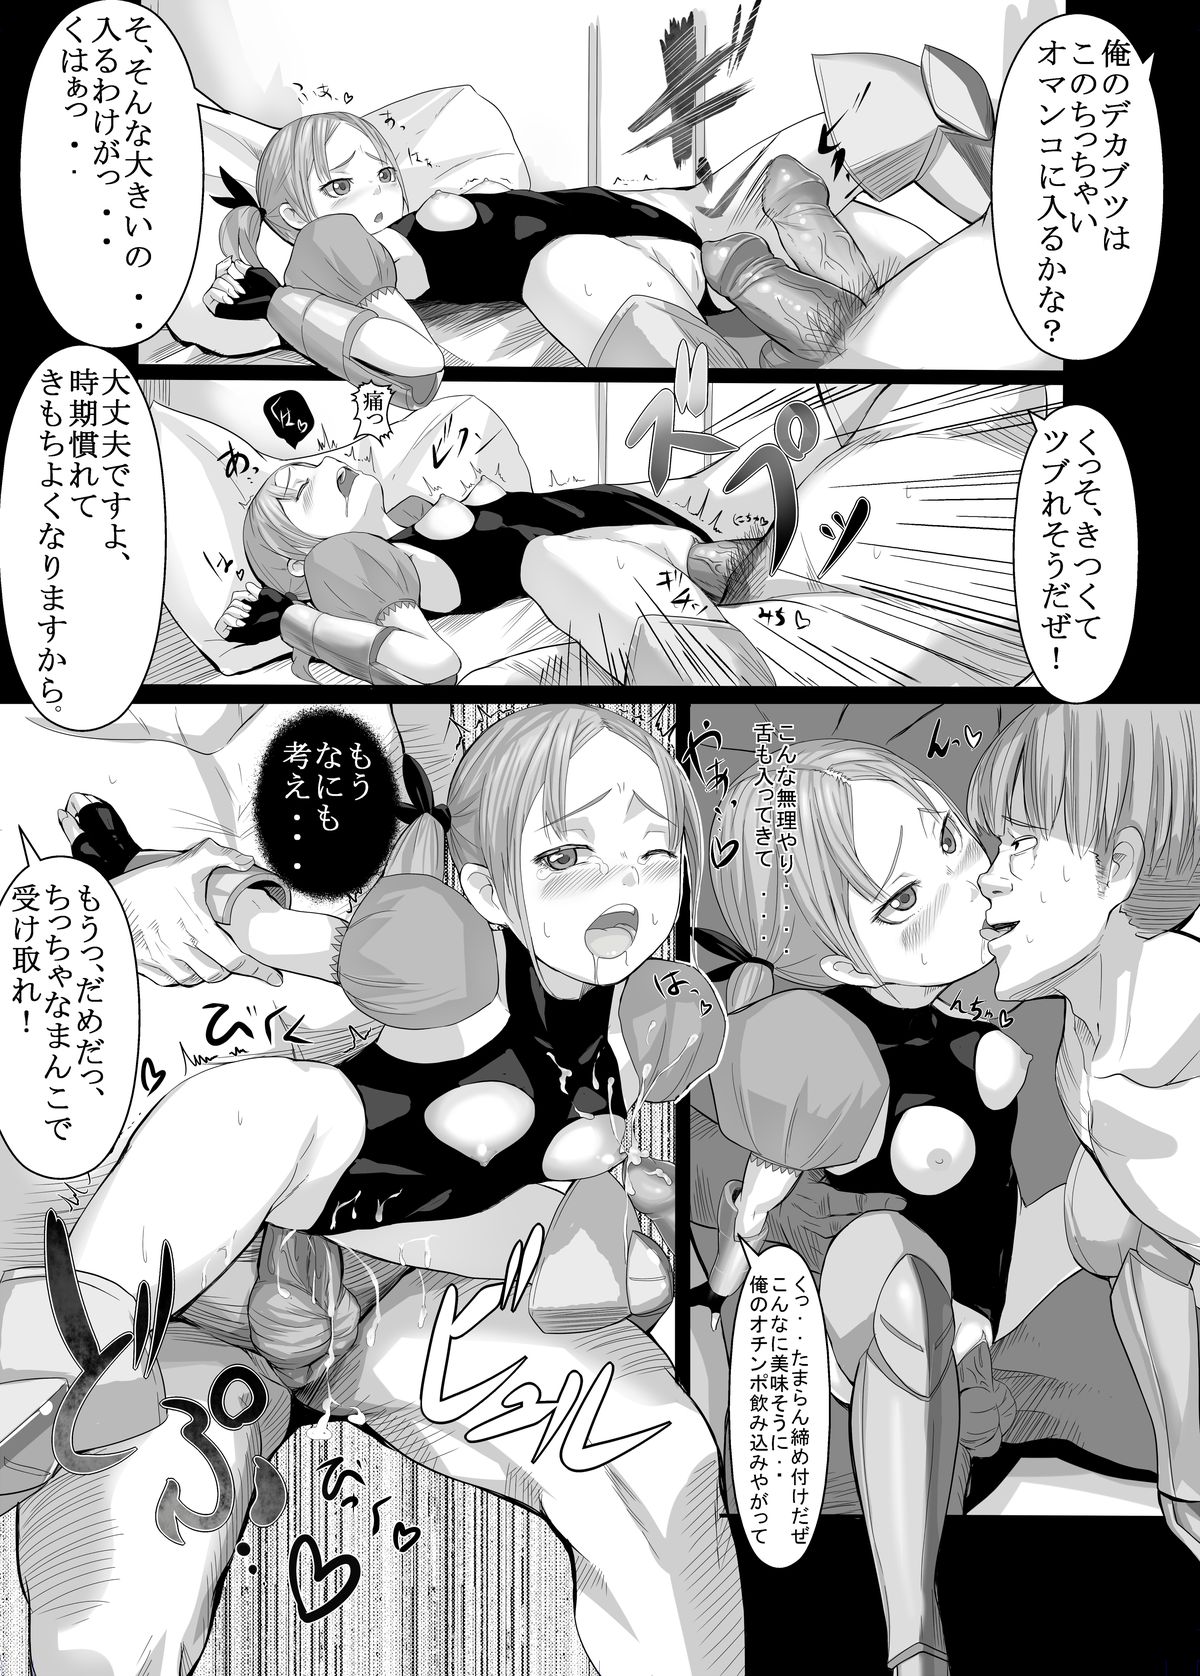 [Jishimaru] 成人向け漫画2P「小っちゃな騎士」 [Digital] page 3 full